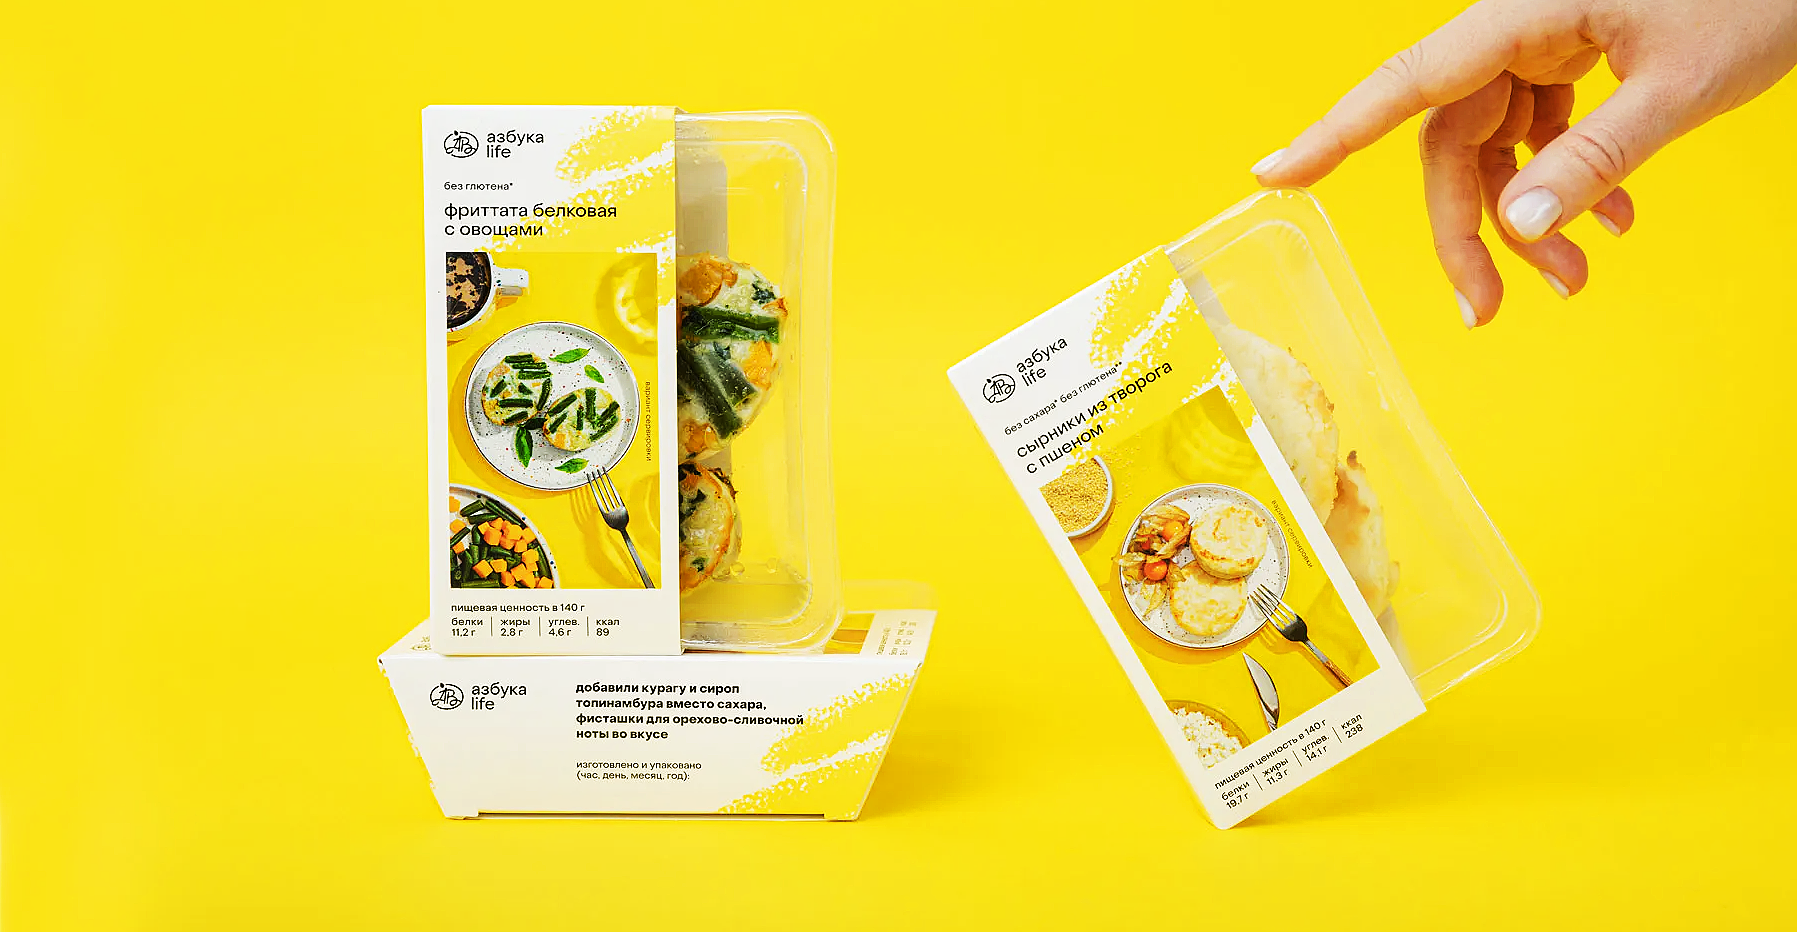 食品包装盒设计案例鉴赏